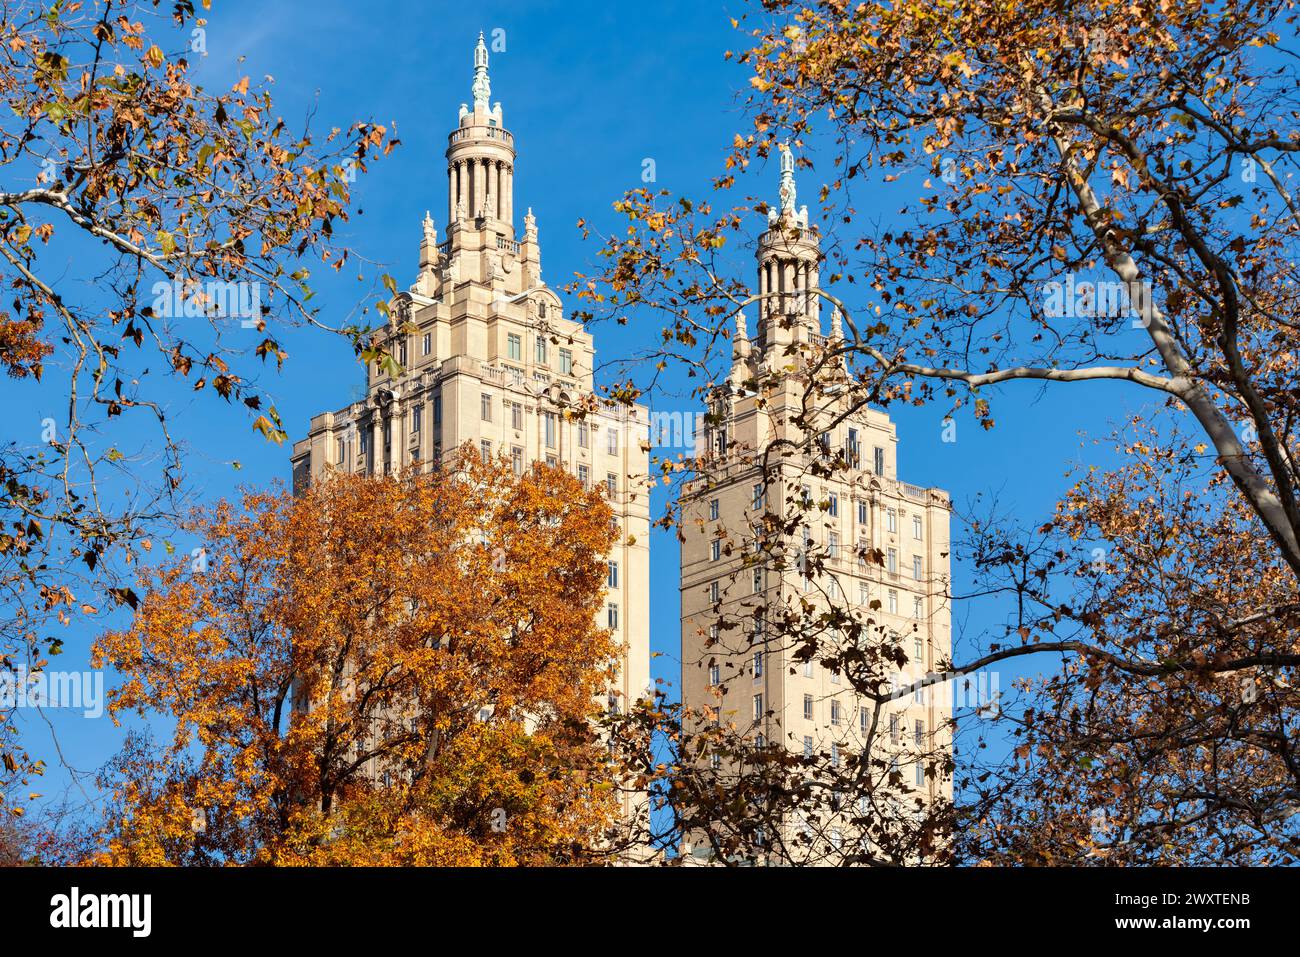 Les deux tours du bâtiment historique San Remo. Quartier historique de Central Park West avec feuillage d'automne, Upper West Side, Manhattan, New York Banque D'Images